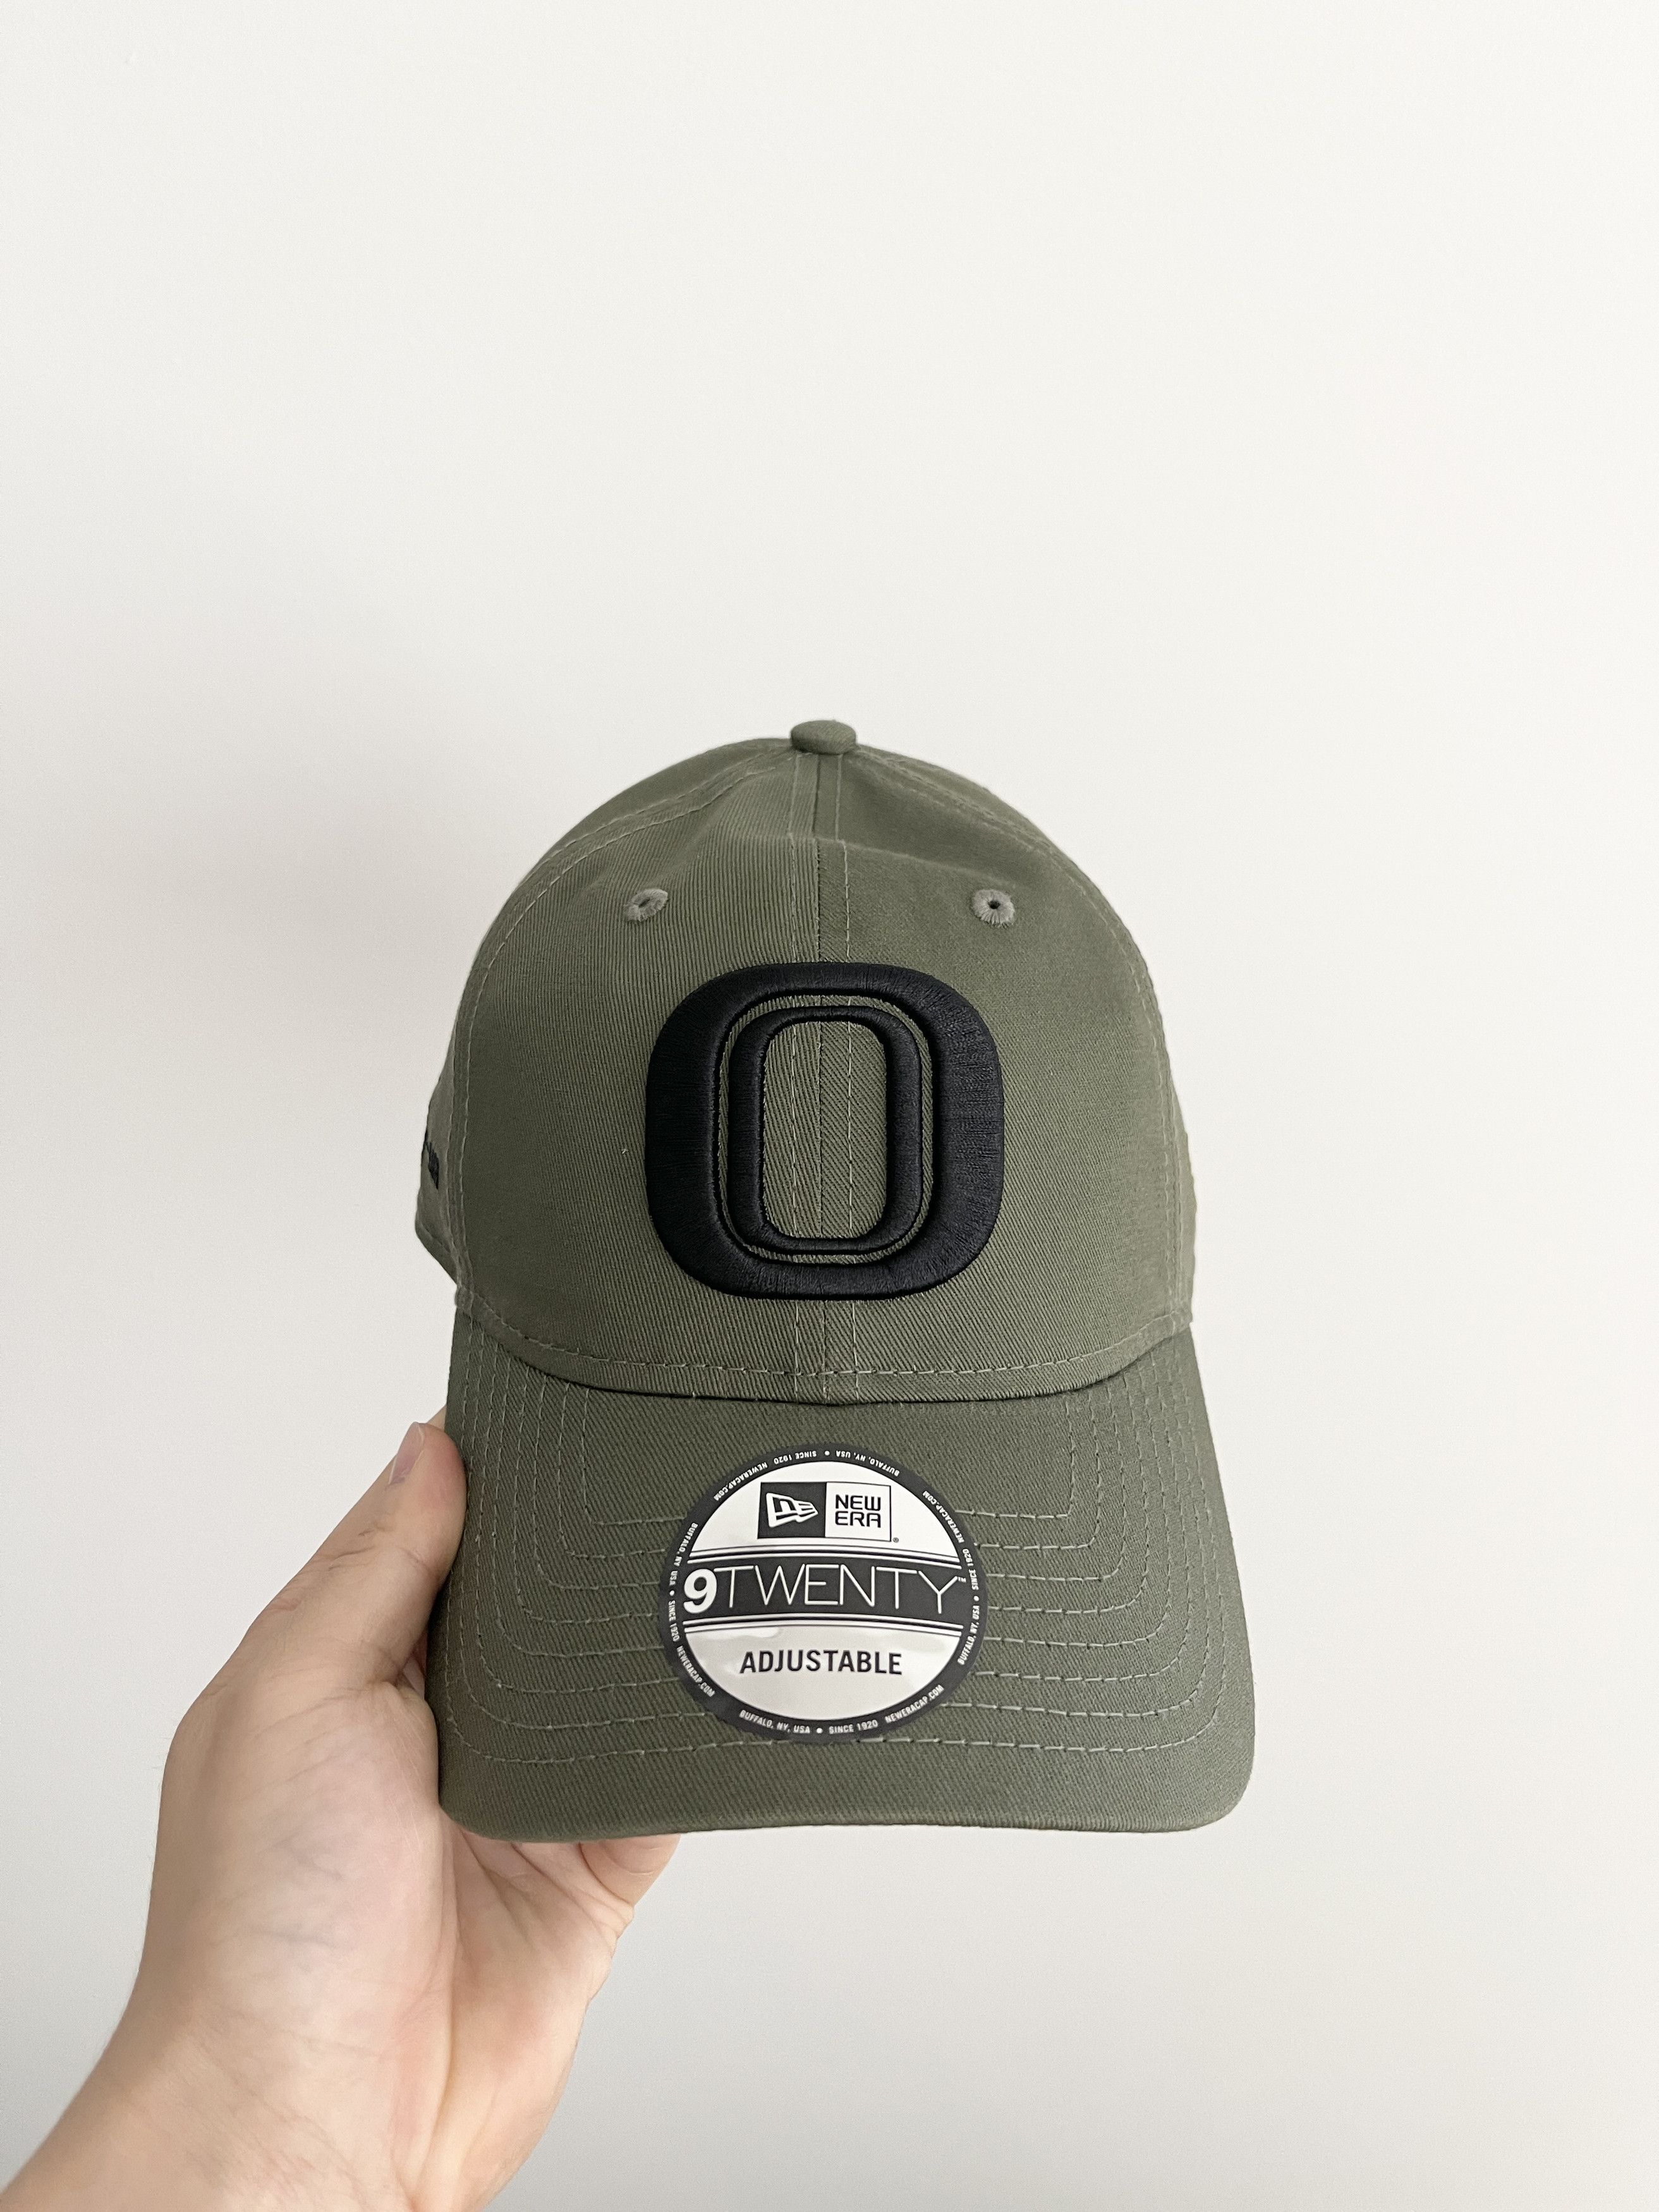 Men's OTTO 958 Hats | Grailed